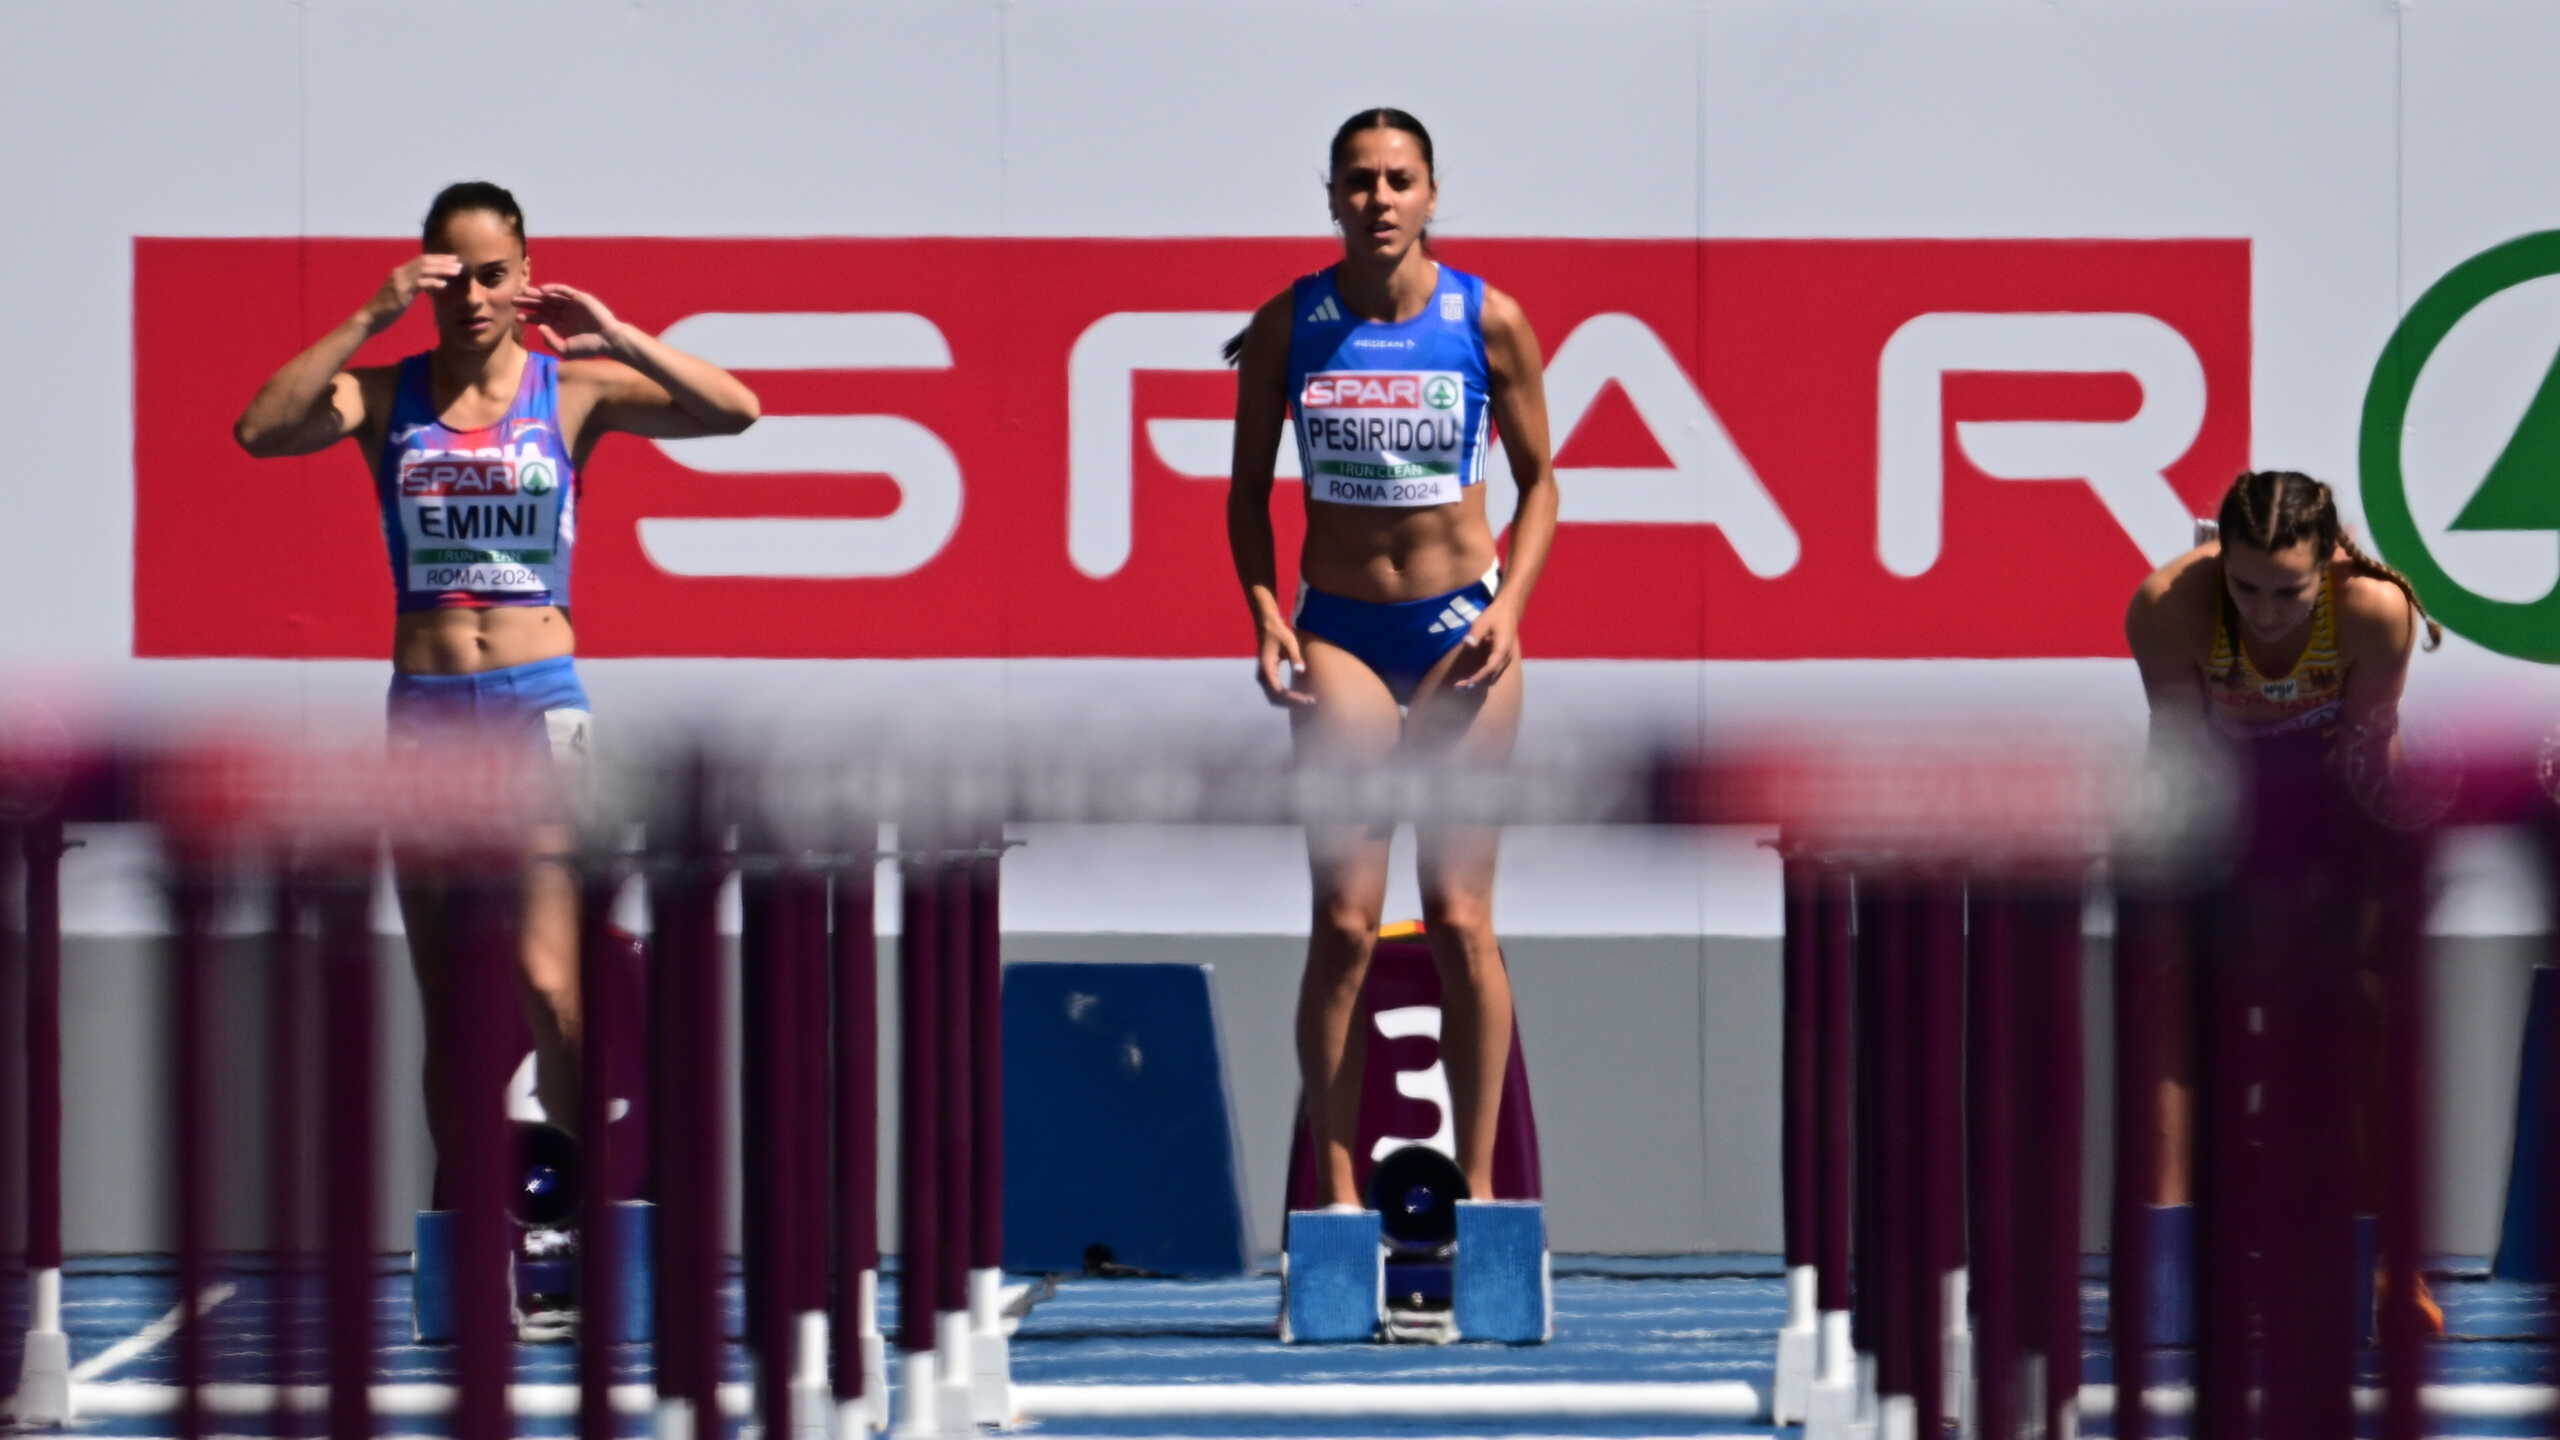 Η Ελισάβετ Πεσιρίδου αποκλείστηκε στα προκριματικά των 100 μέτρων με εμπόδια στο ευρωπαϊκό πρωτάθλημα στίβου